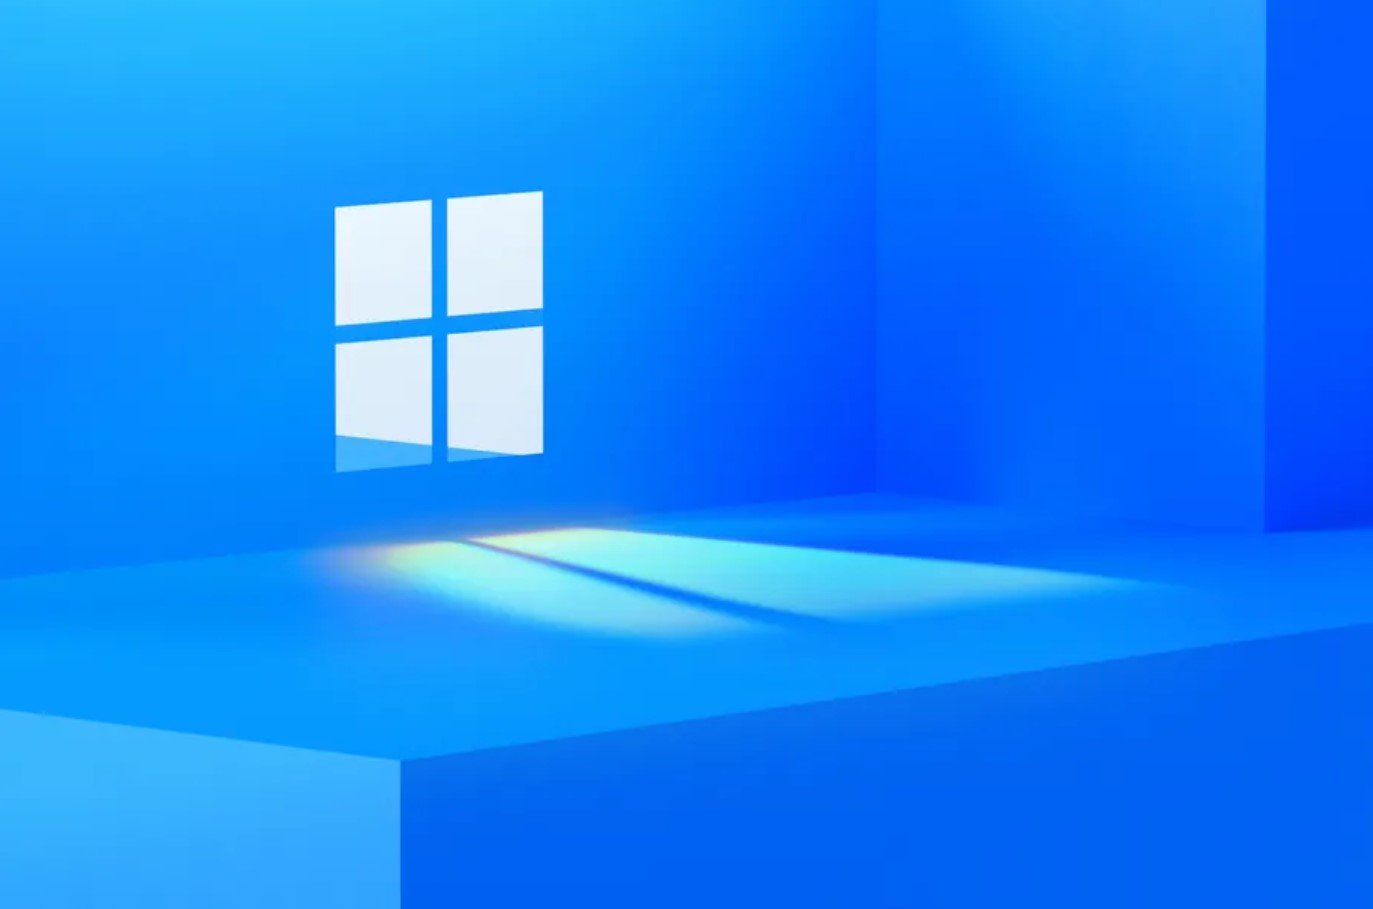 Η Microsoft κάνει tease τα Windows 11 κυκλοφορώντας 11-λεπτό βίντεο με τους ήχους εκκίνησης των Windows